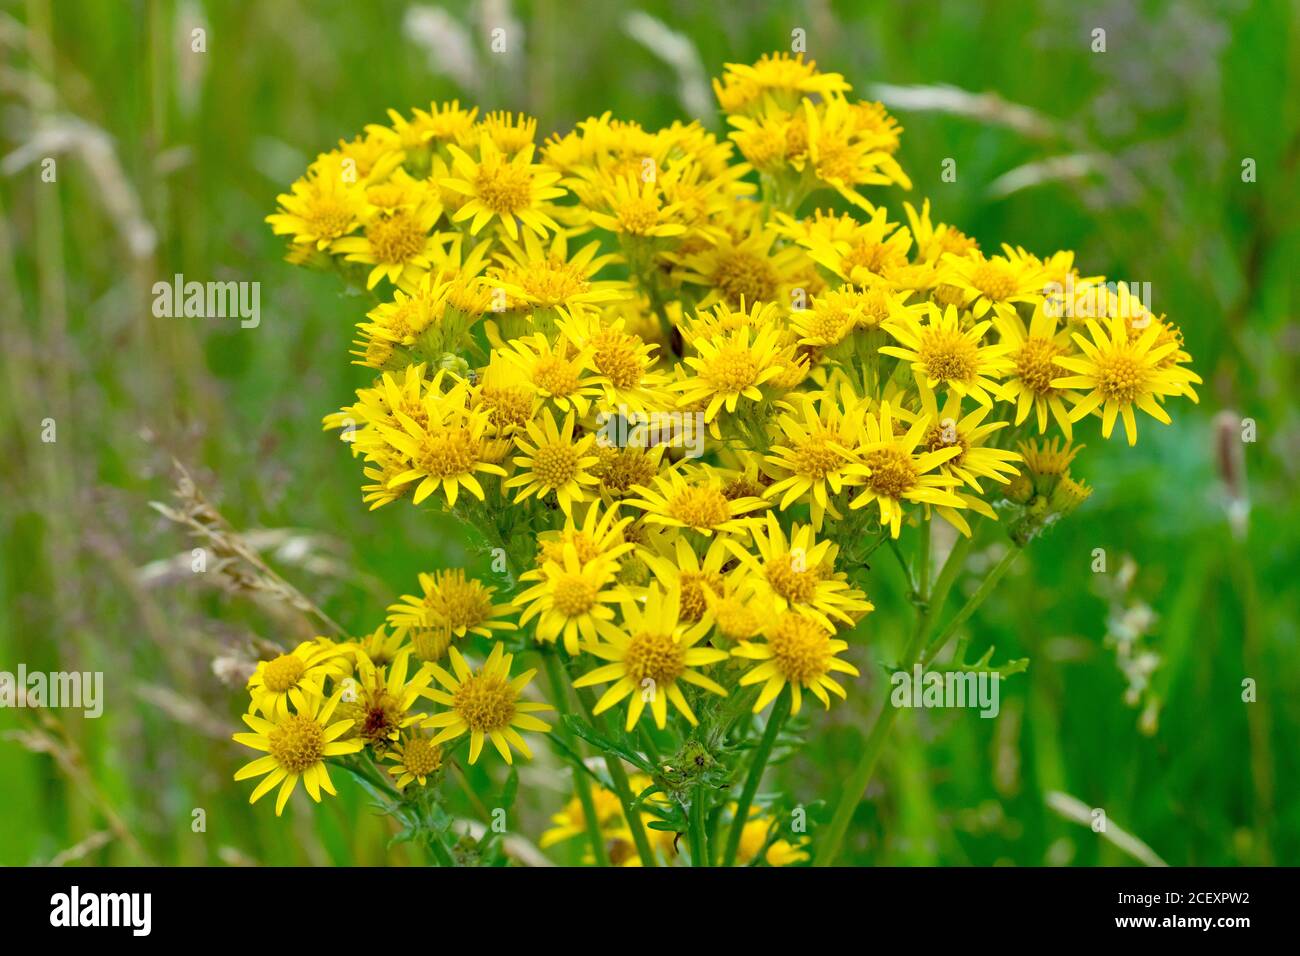 Ragobaea commune (senecio jacobaea), gros plan du sommet de la plante montrant les nombreuses fleurs jaunes qu'elle produit. Banque D'Images